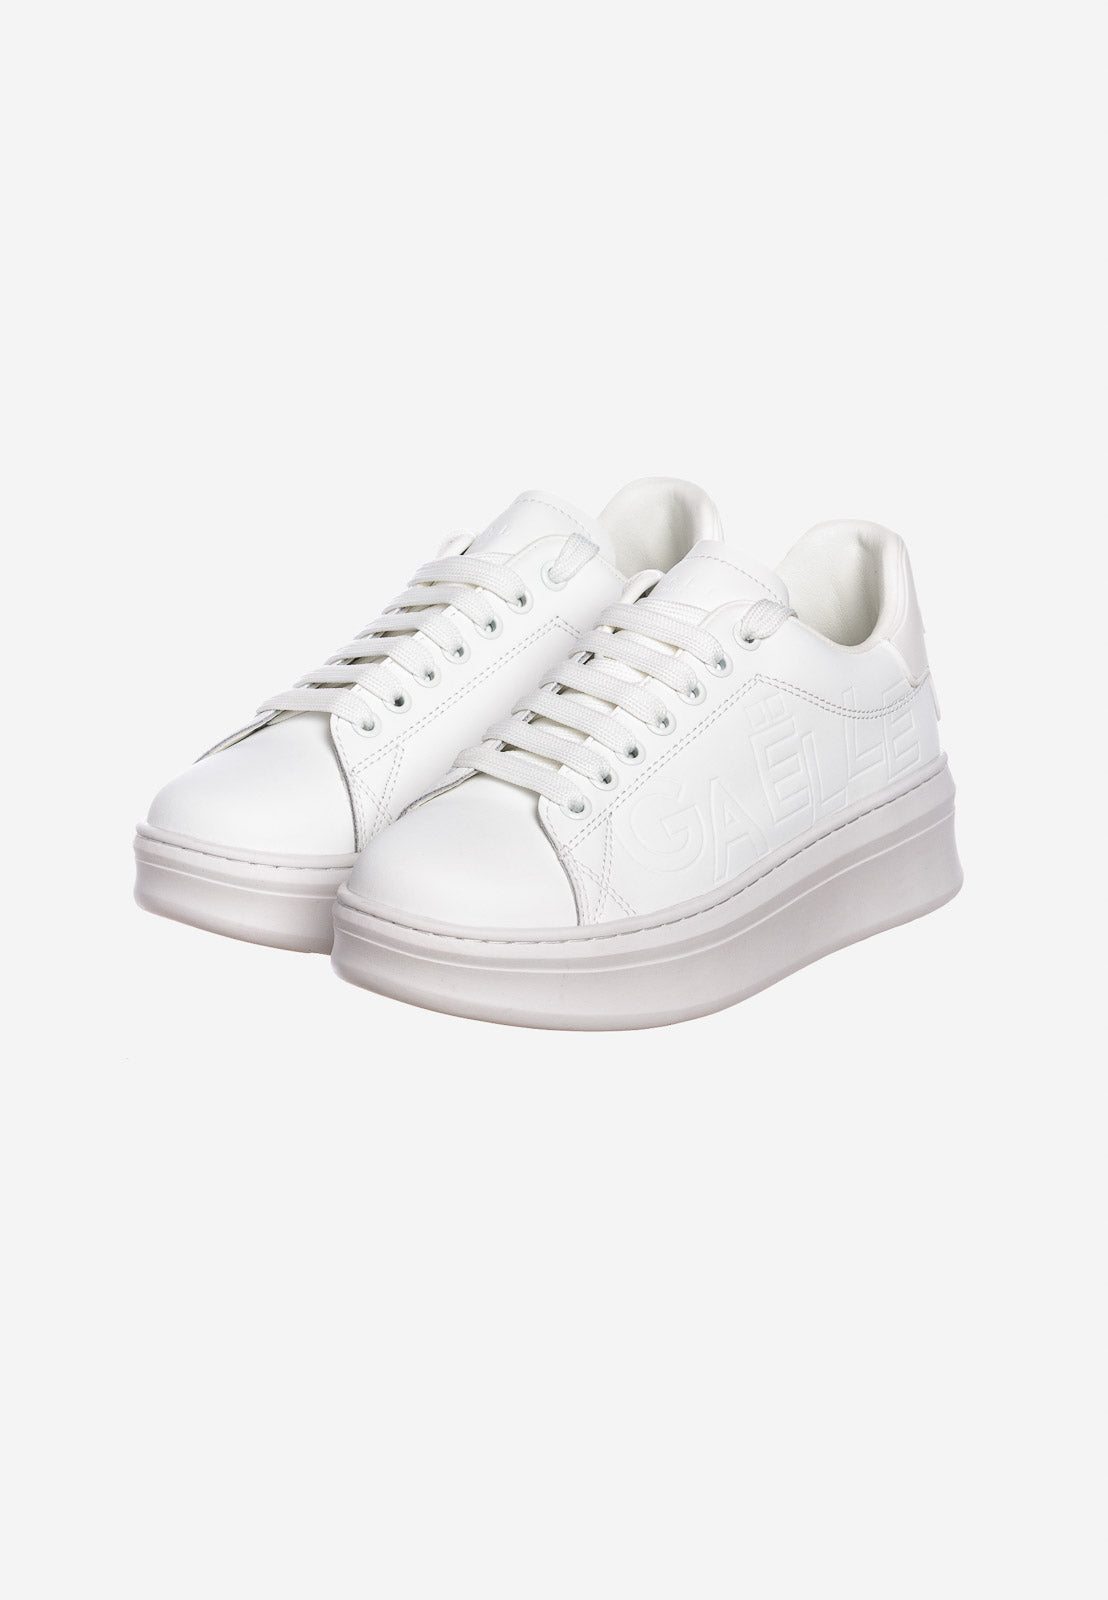 Gaelle donna scarpa sneakers GACAW00015 BI01 Bianco